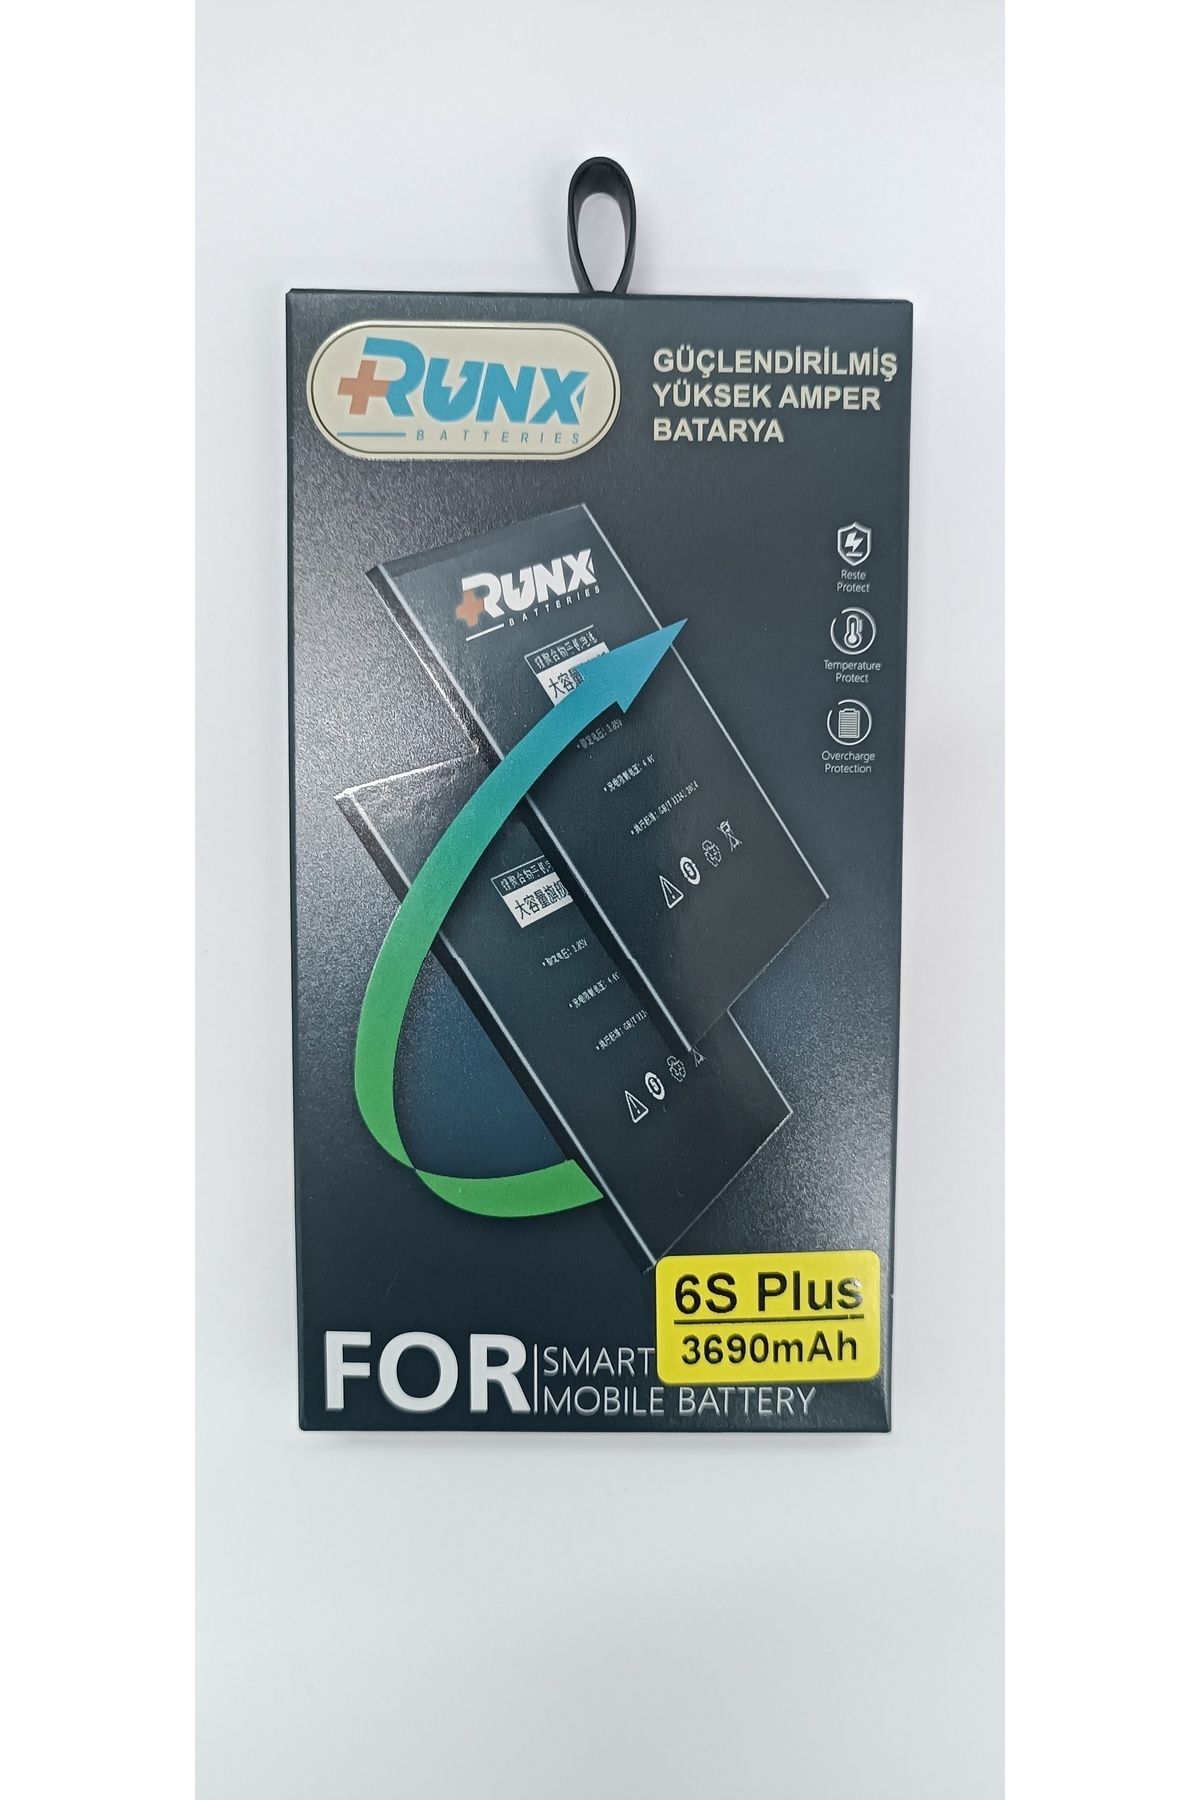 RUNX Iphone 6s Plus Yüksek Amper Güçlendirilmiş Batarya